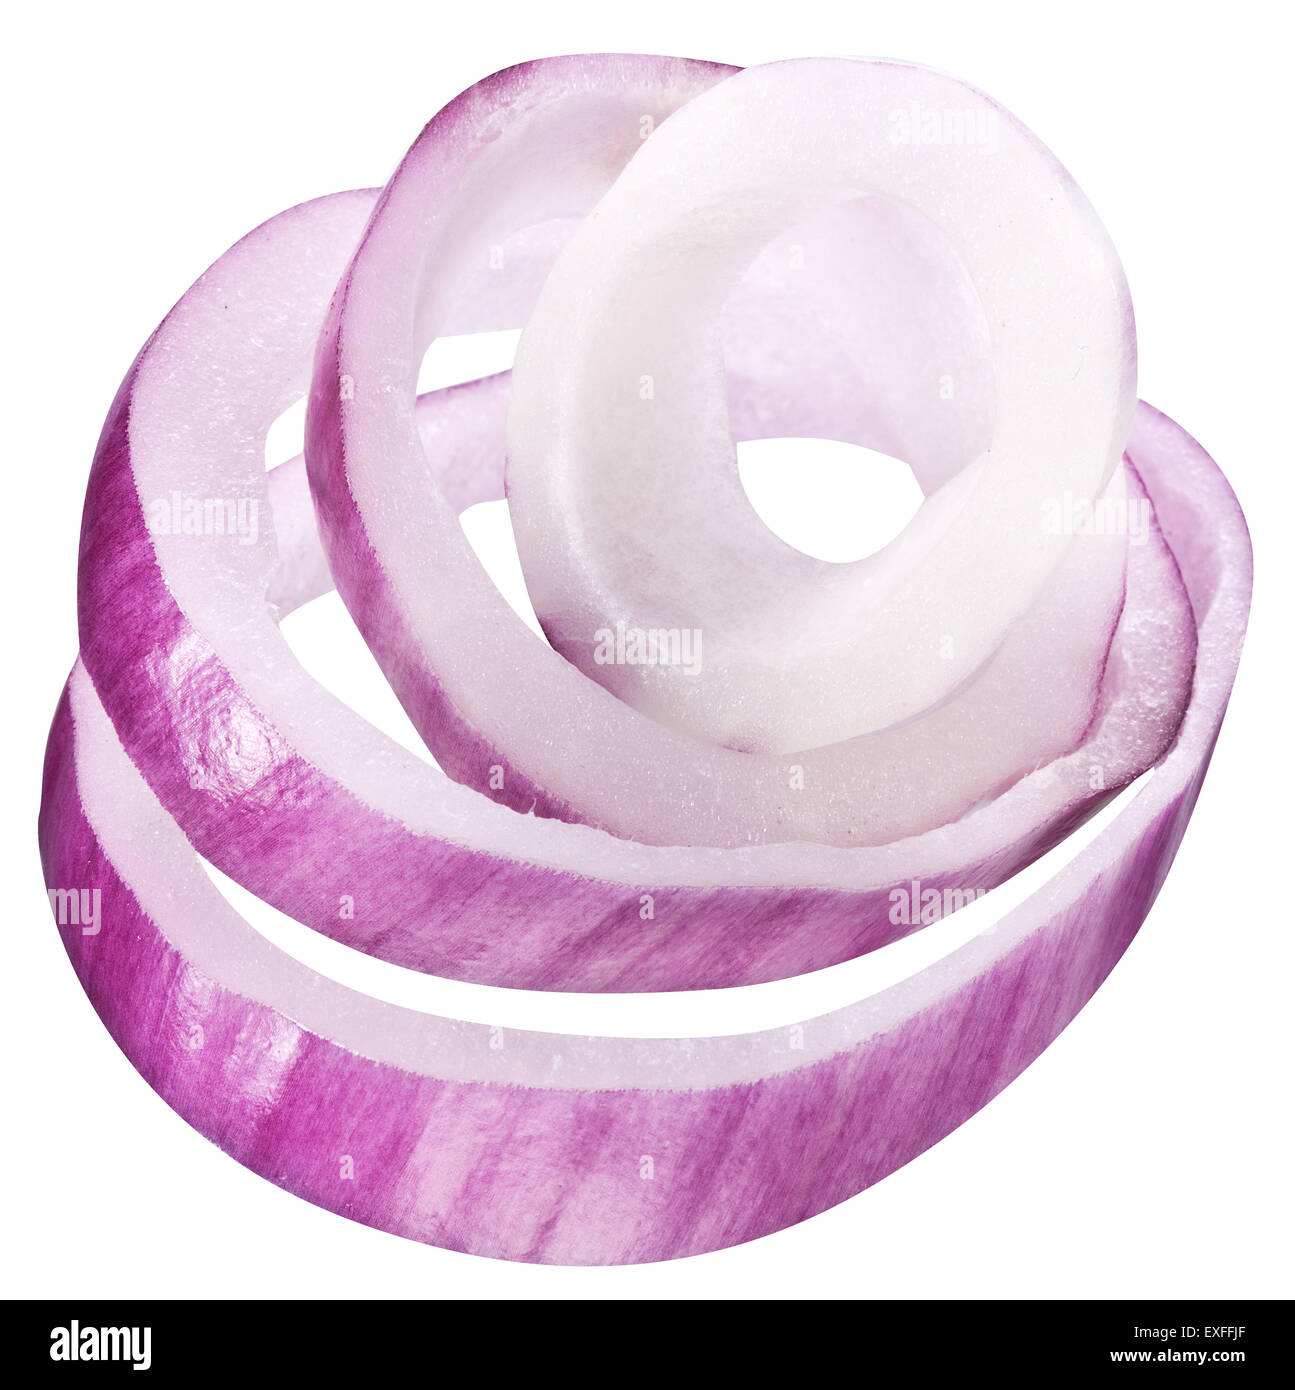 Onion rings. Fichier contient des chemins de détourage. Banque D'Images